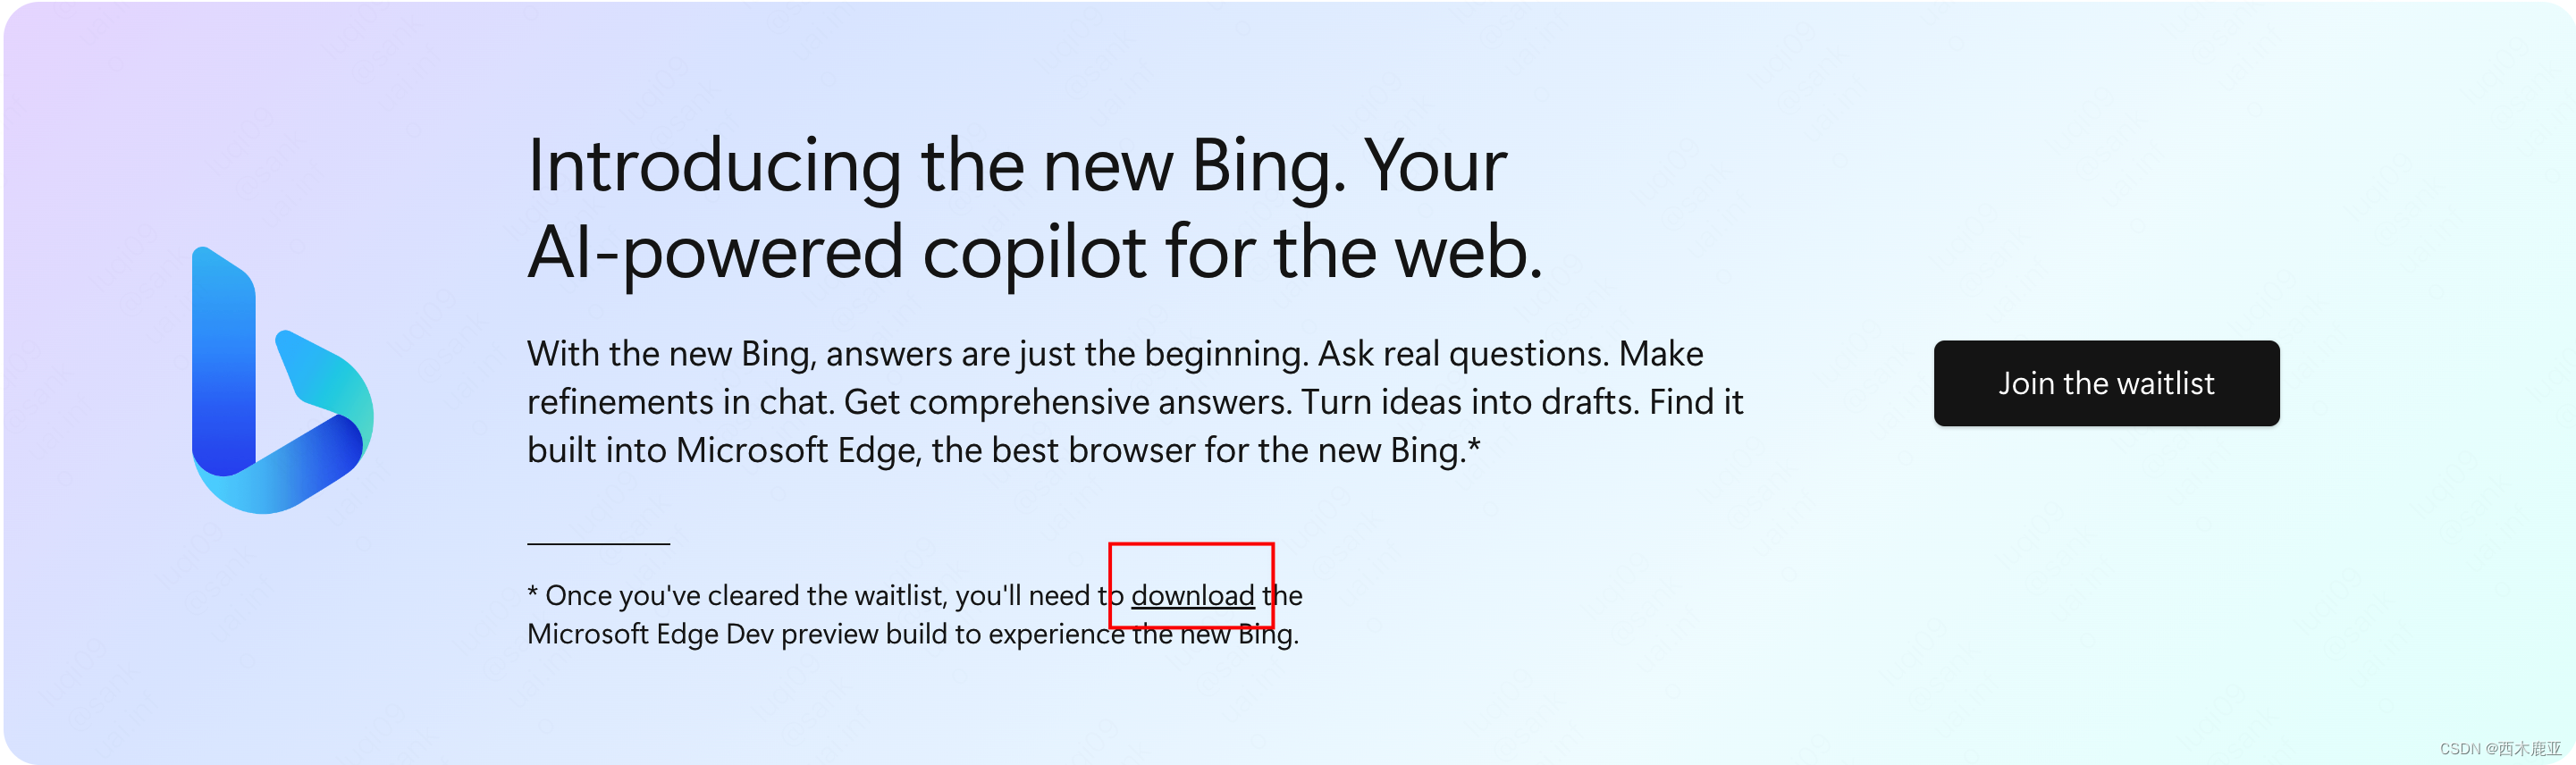 总是跳转到国内版(cn.bing.com)？New Bing使用全攻略